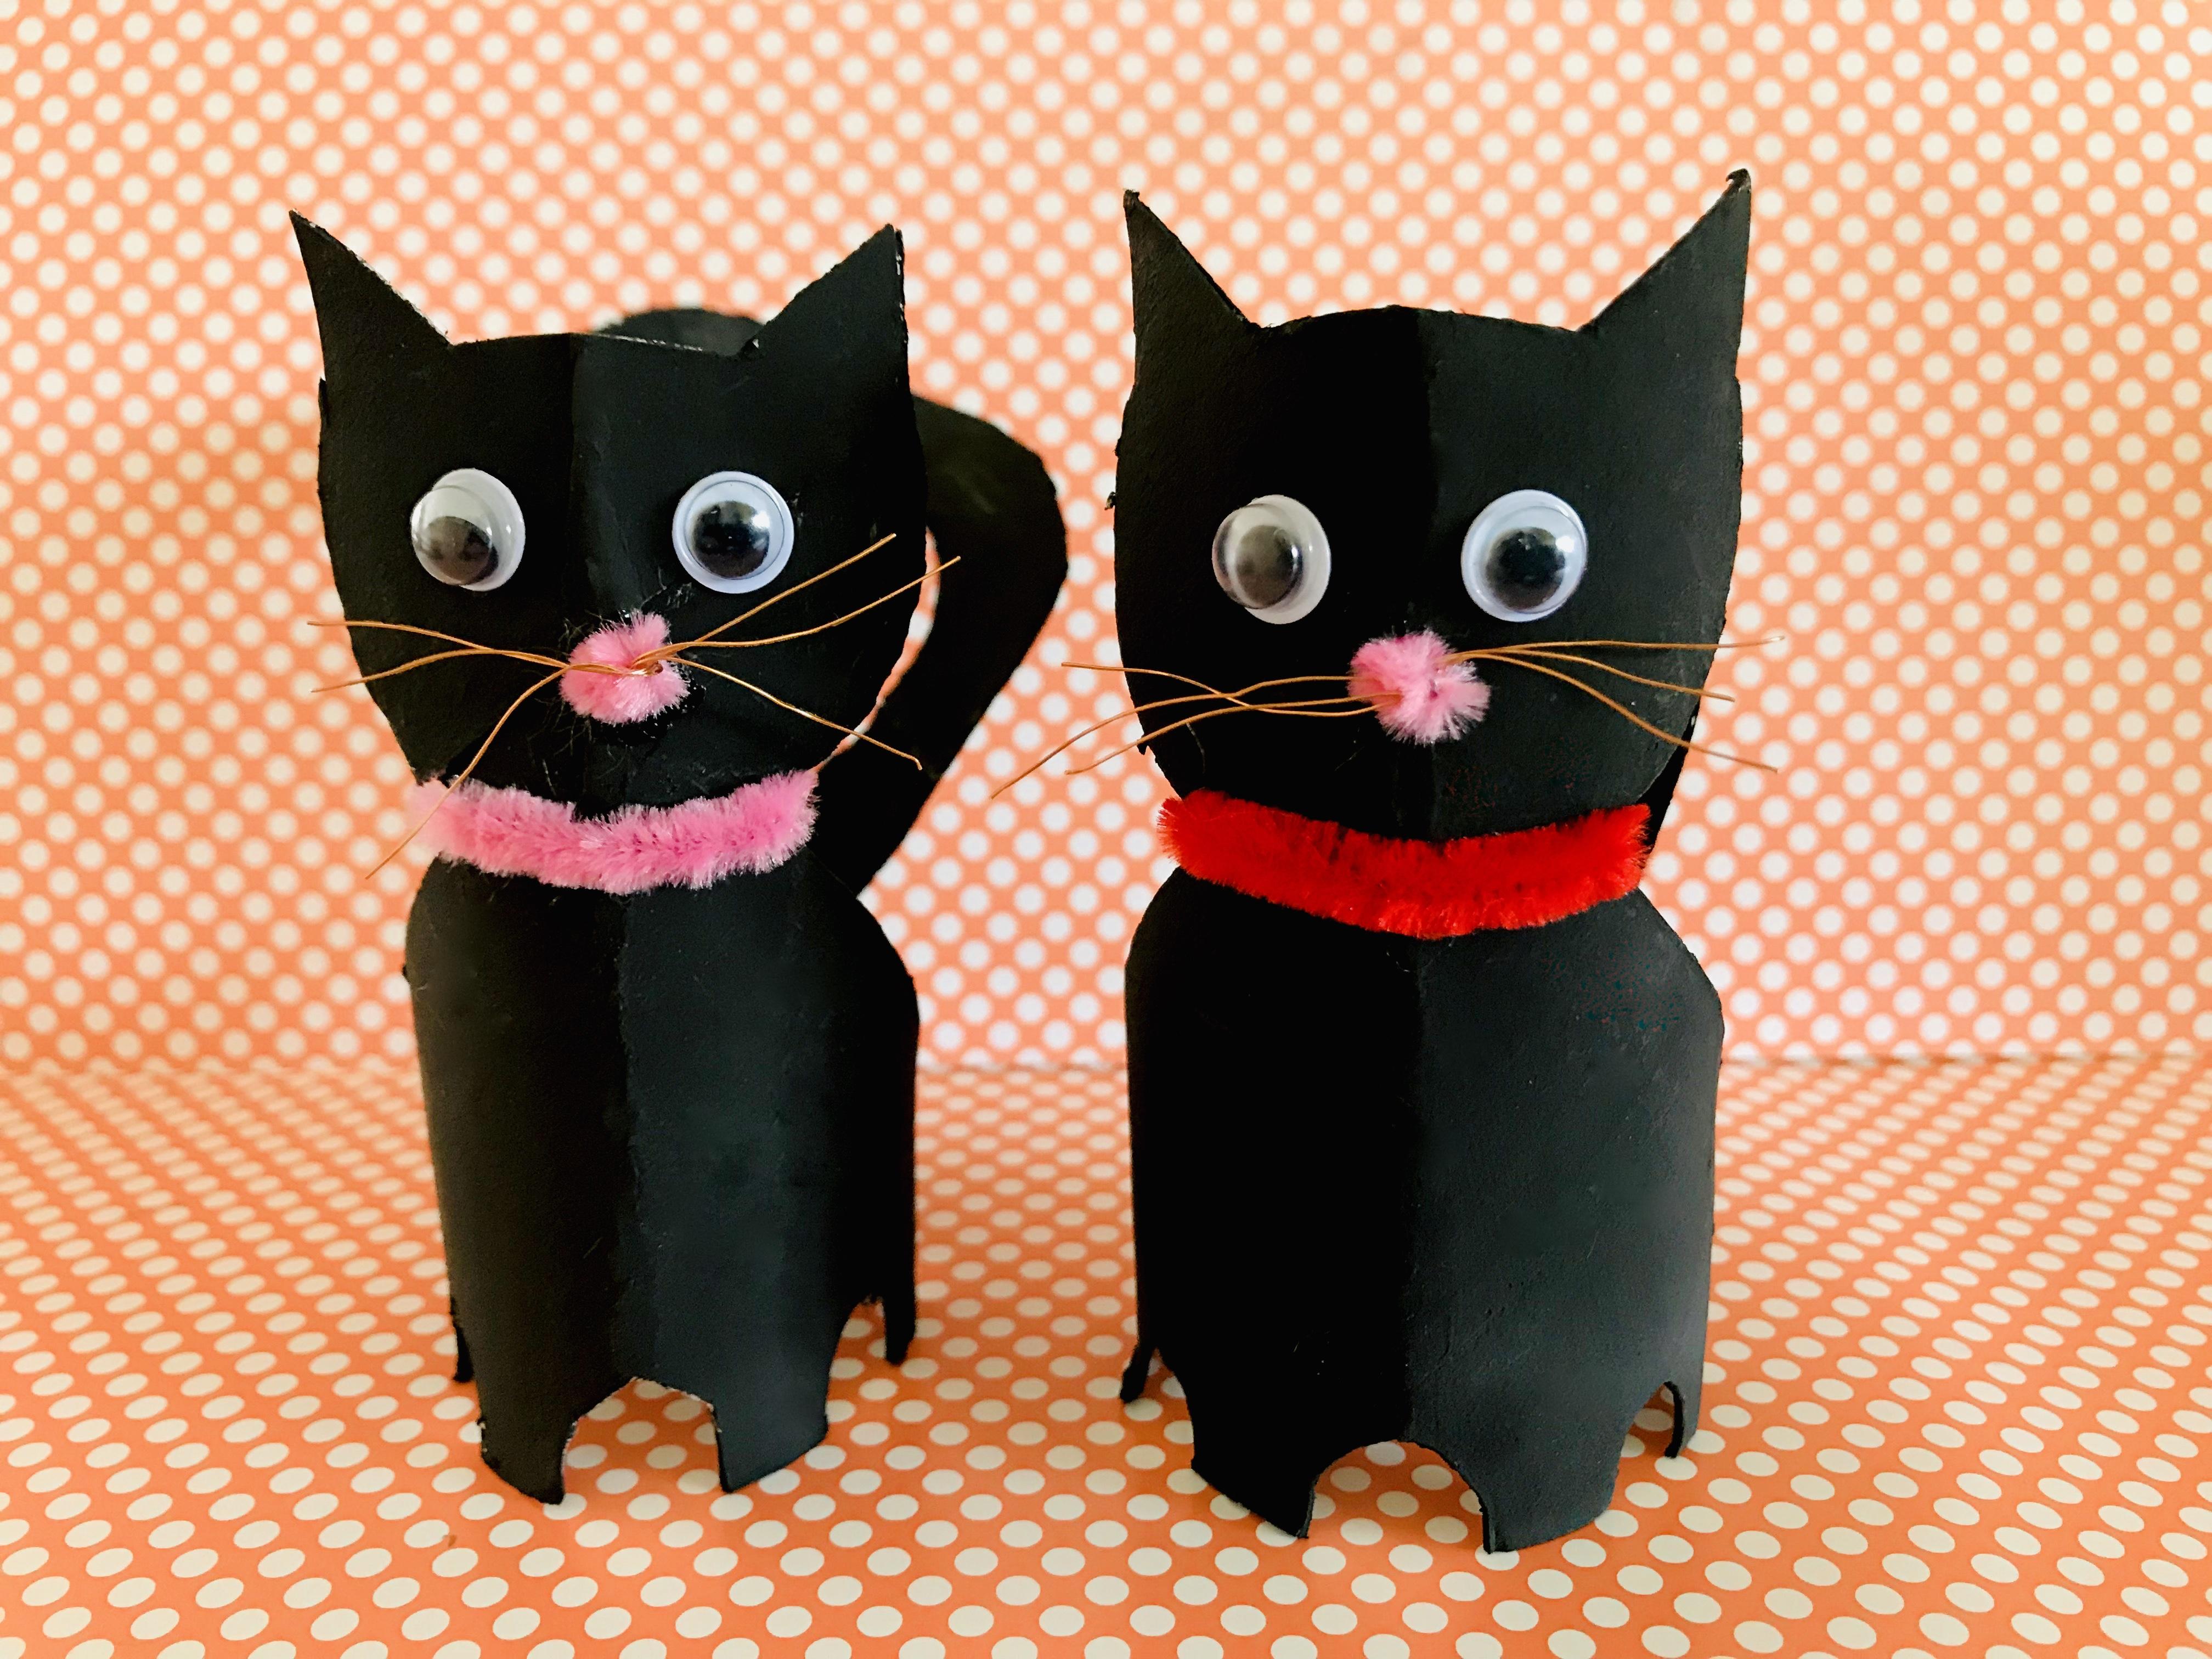 liberaal Recyclen Vloeibaar Zwarte katten knutselen van wc-rolletjes